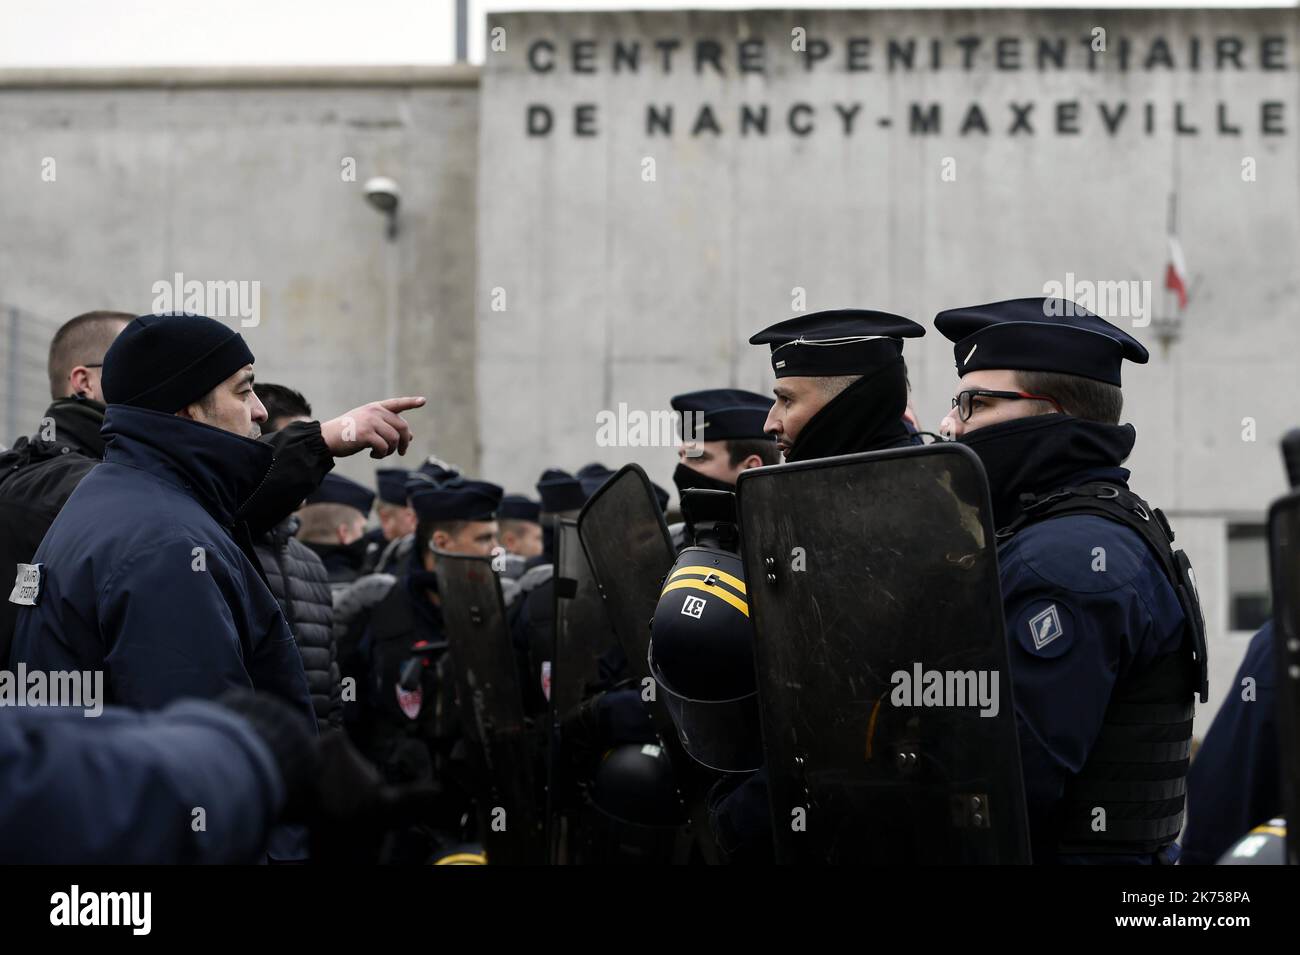 Il personale penitenziario partecipa a uno sciopero bloccando l'accesso all'ingresso della prigione di Maxeville, Francia, 24 gennaio 2018. I sindacati hanno chiesto un movimento nazionale a seguito di diversi attacchi alle guardie nelle prigioni francesi. Foto Stock